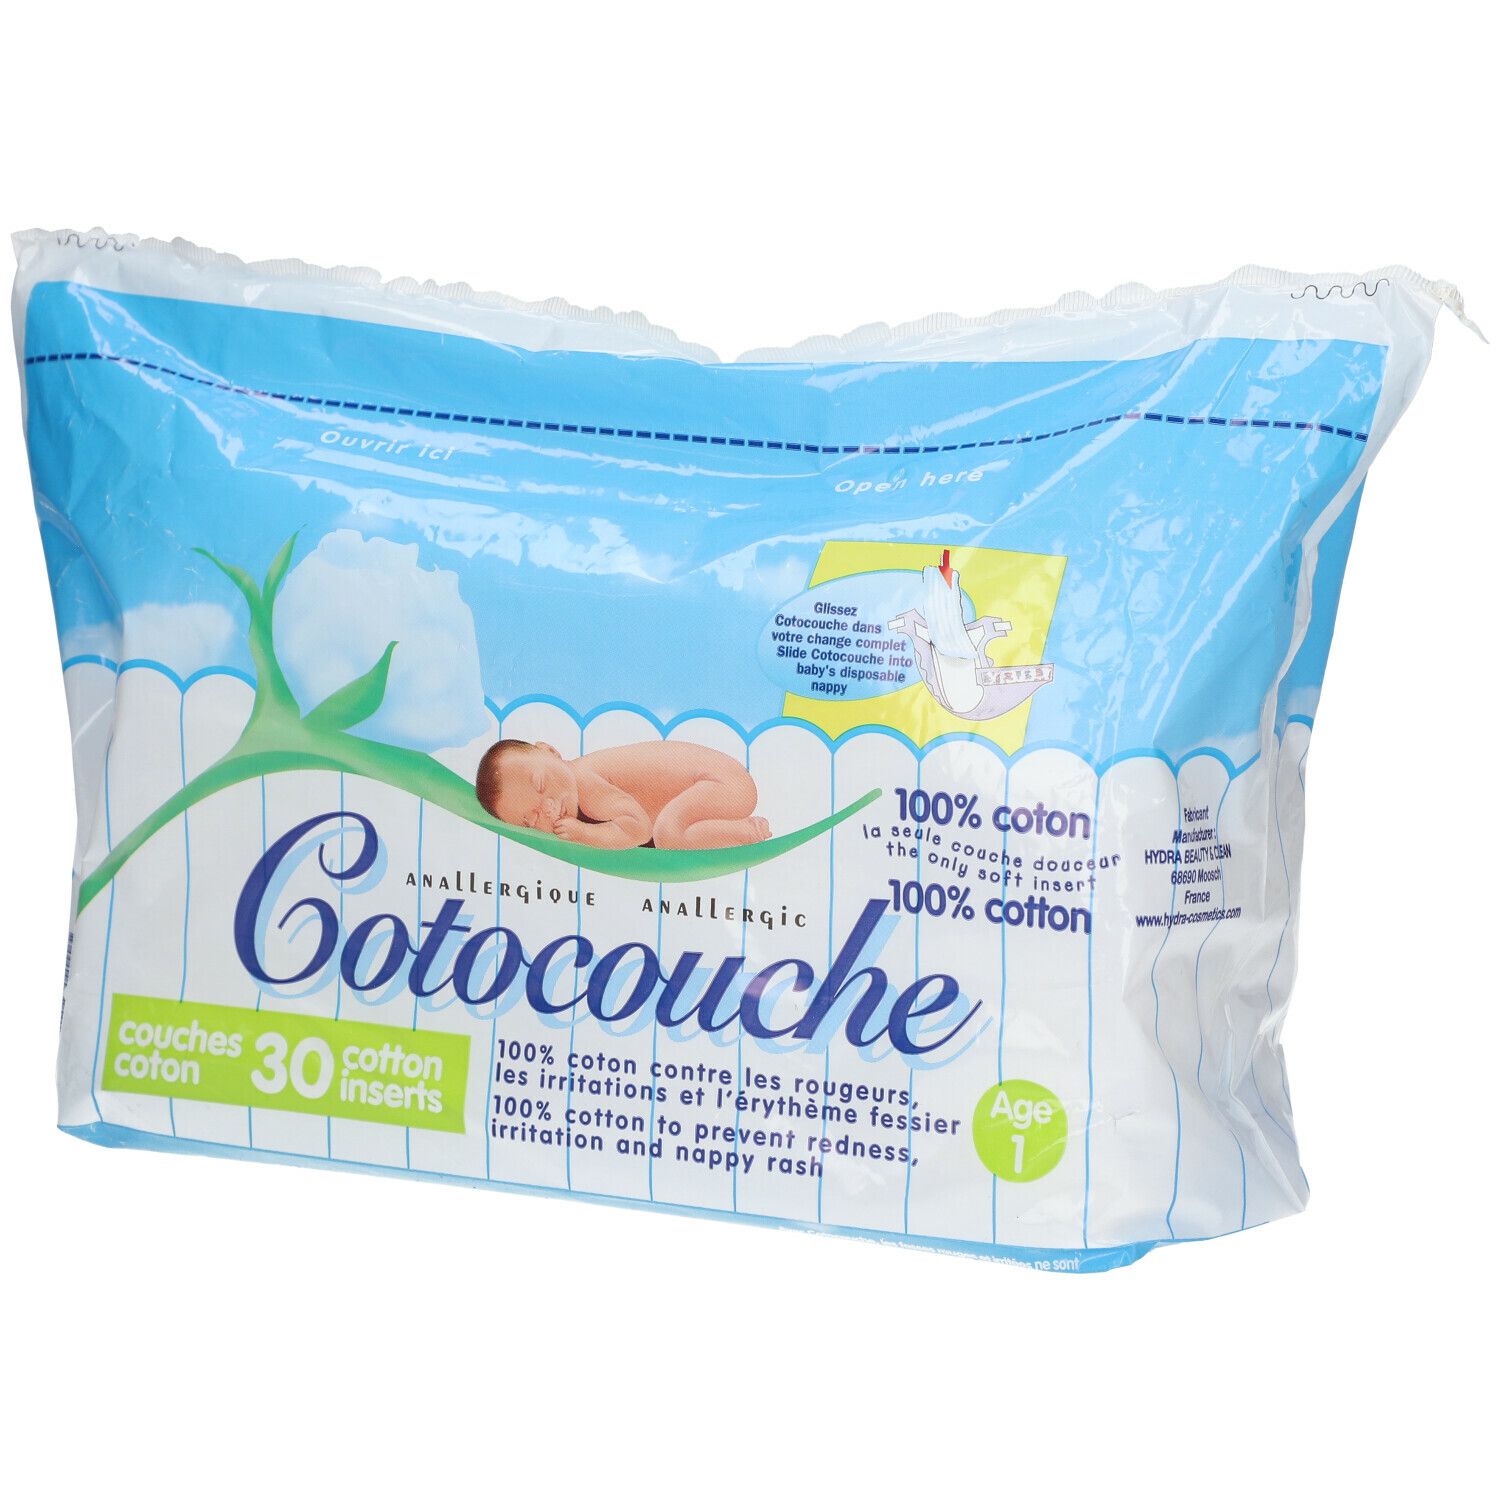 Cotocouche 1st Age, 30 baby's nappies Cotocouche